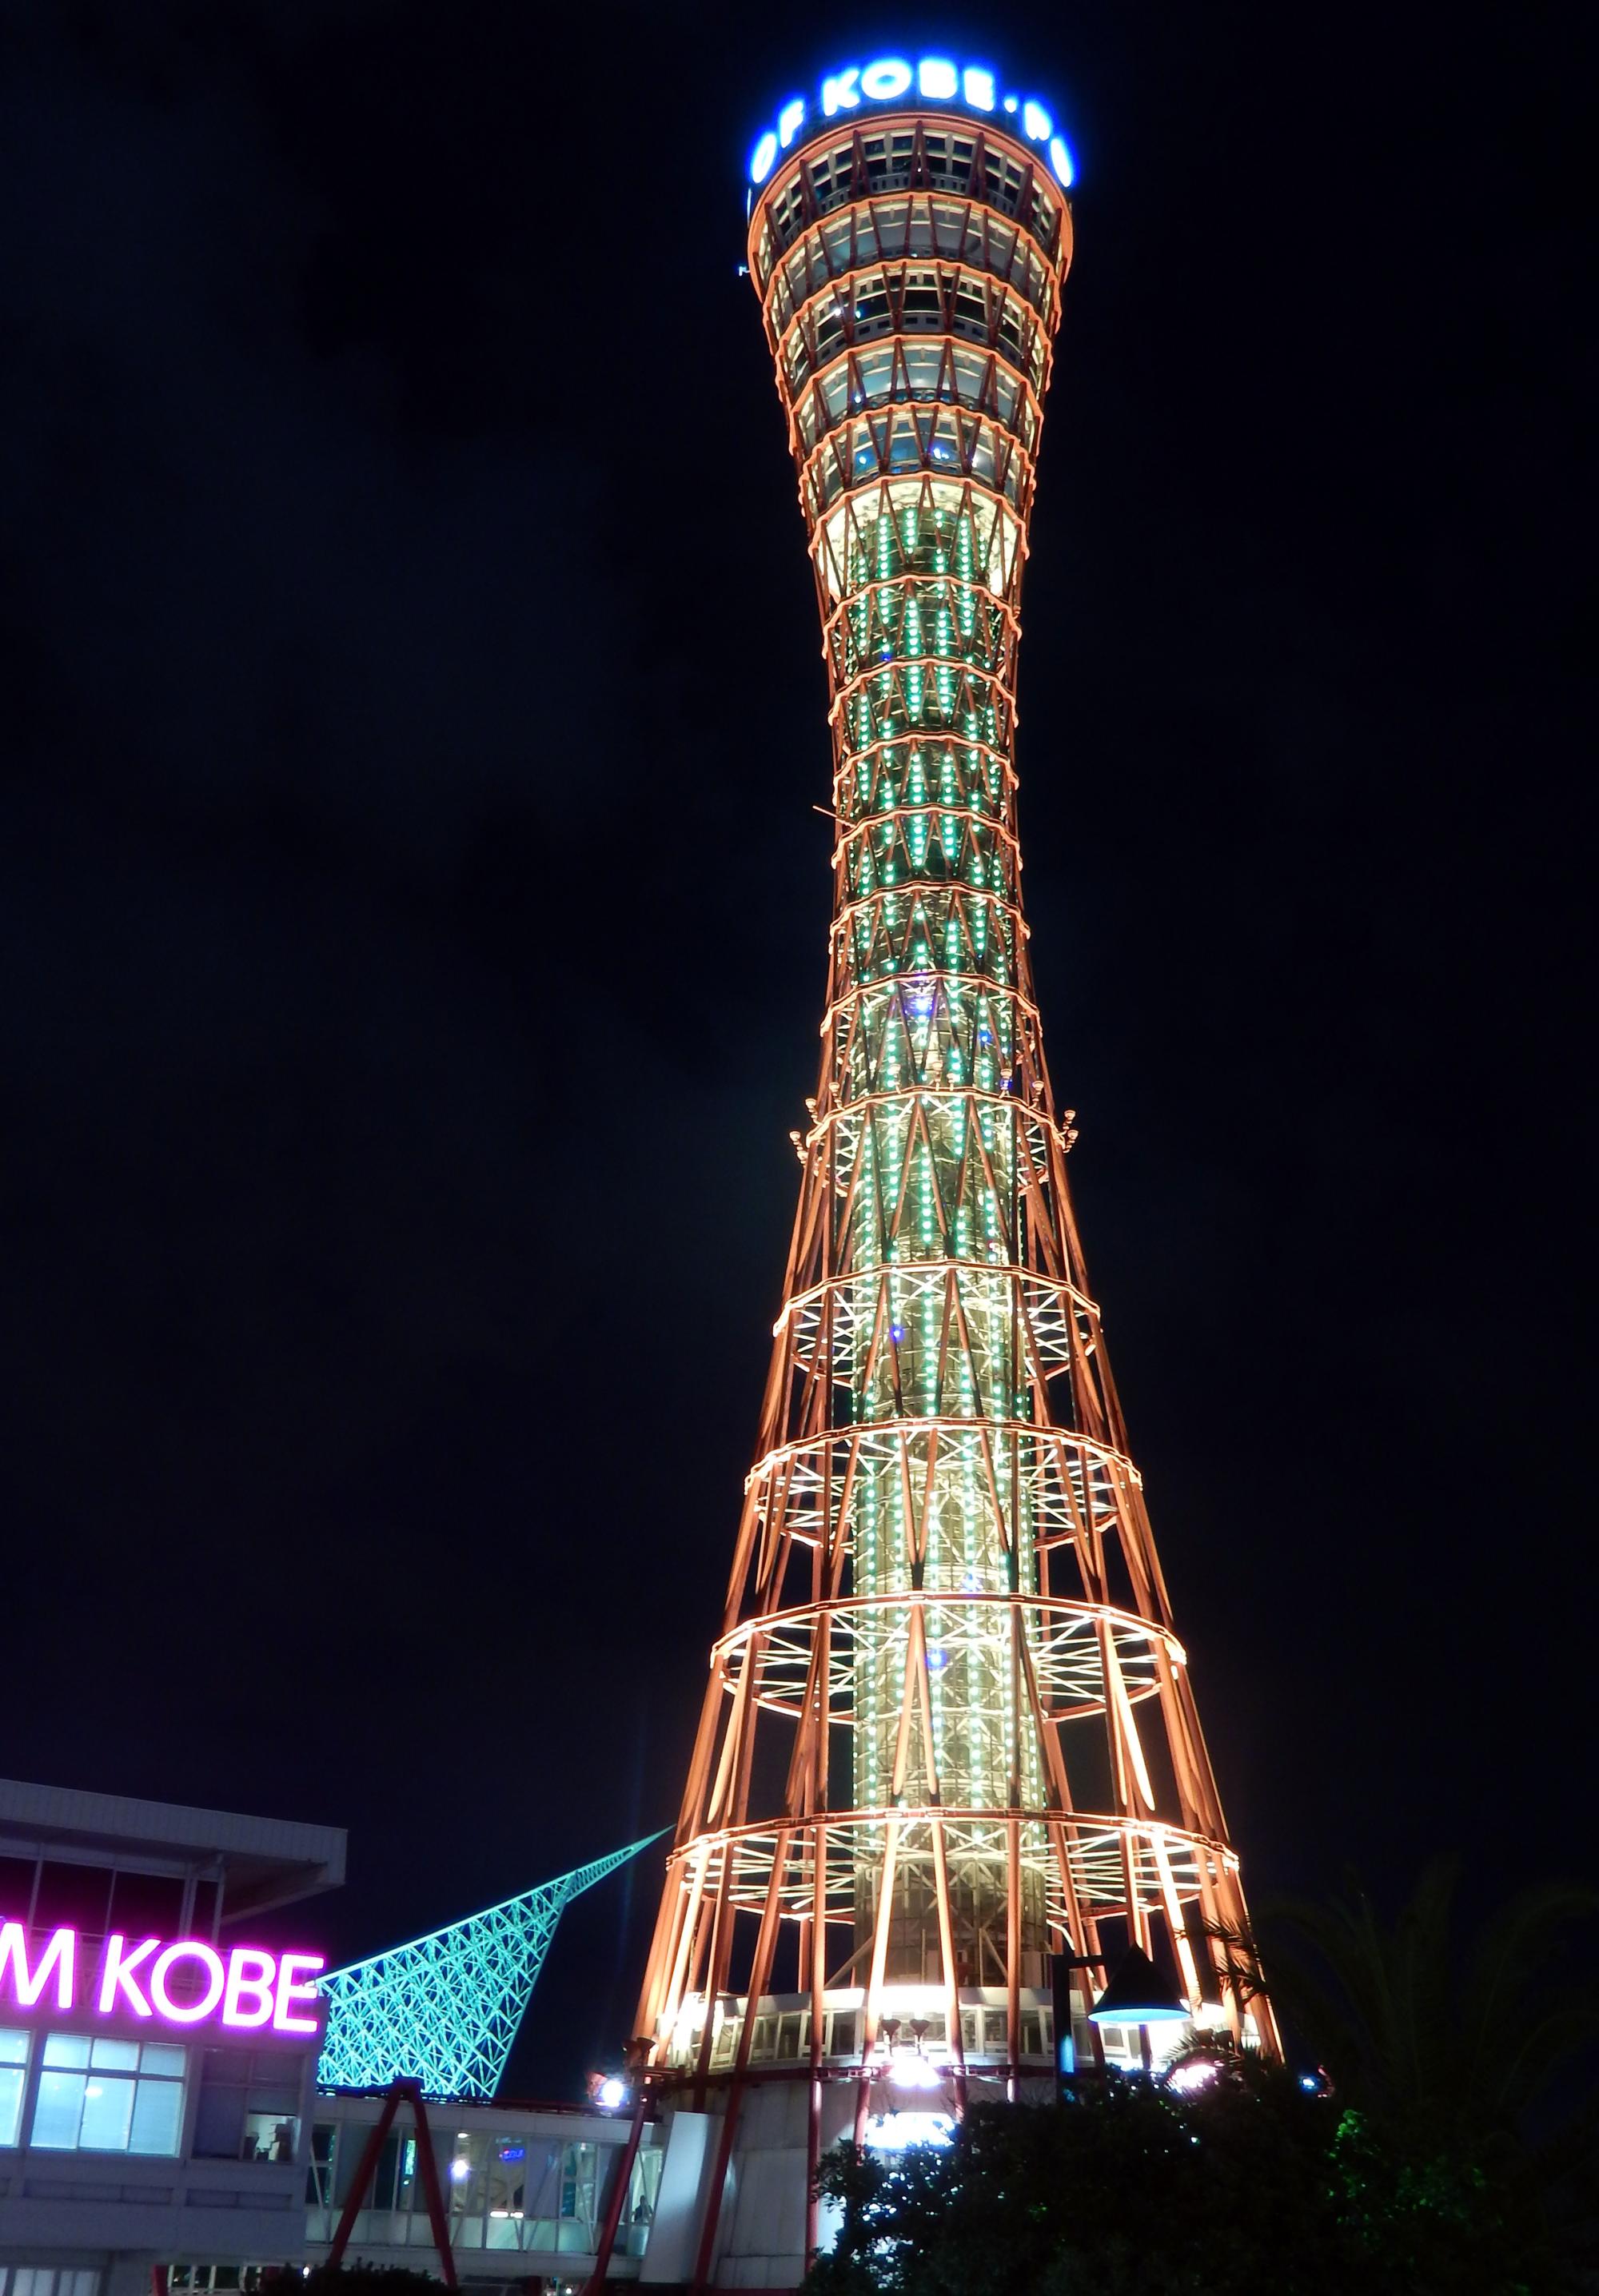 Japan (2017) - Kobe Port Tower #3